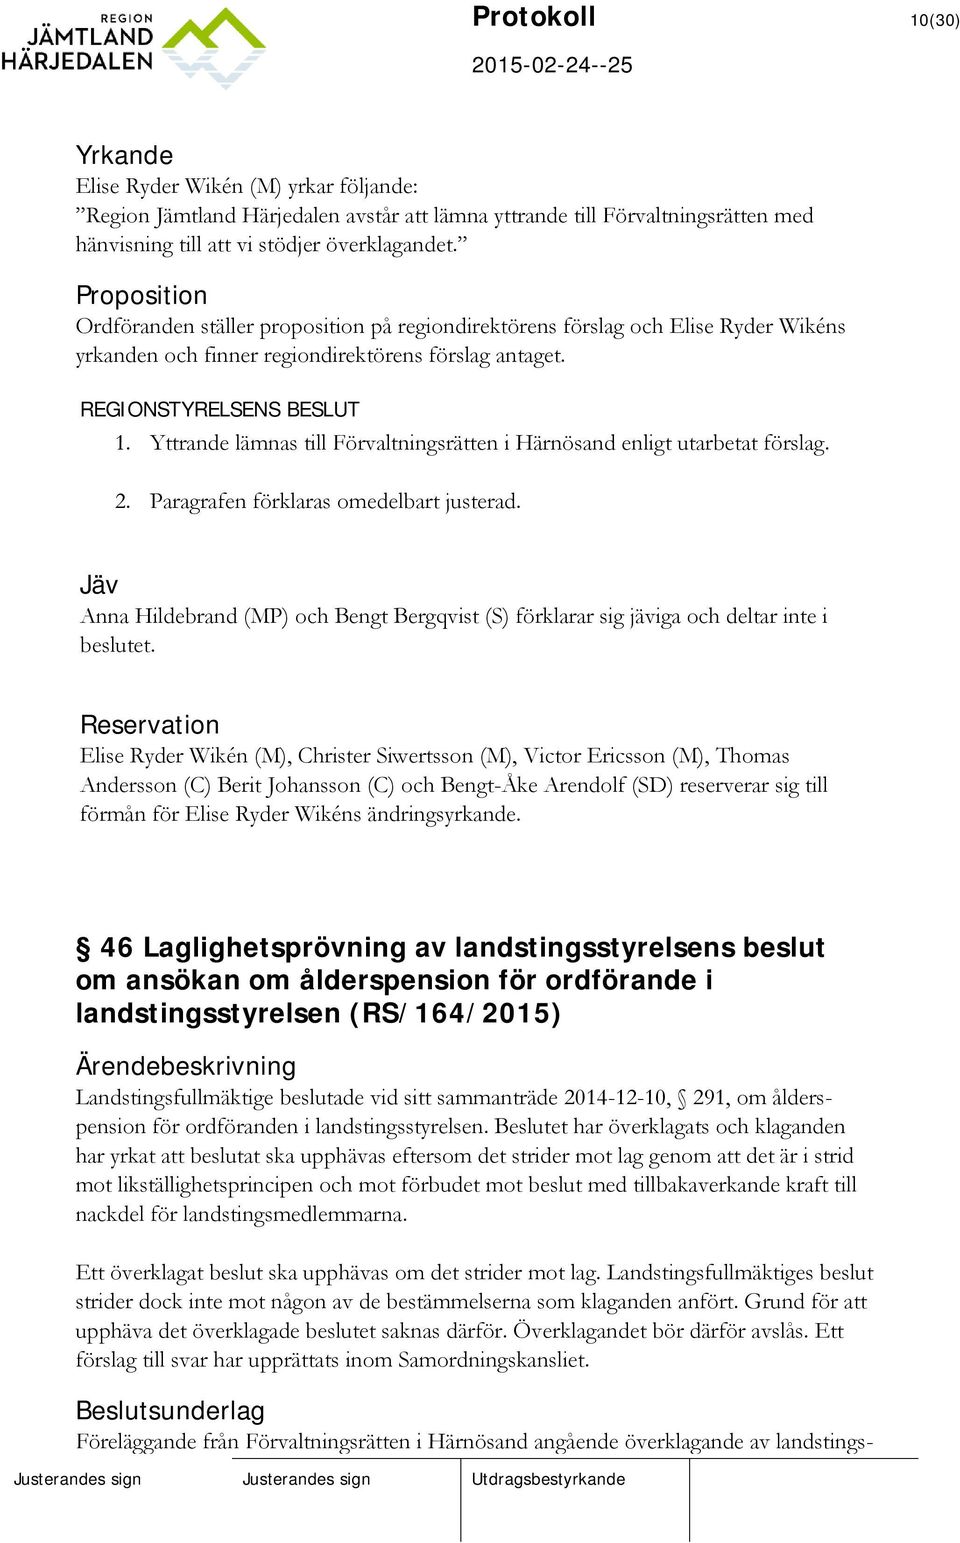 Yttrande lämnas till Förvaltningsrätten i Härnösand enligt utarbetat förslag. 2. Paragrafen förklaras omedelbart justerad.